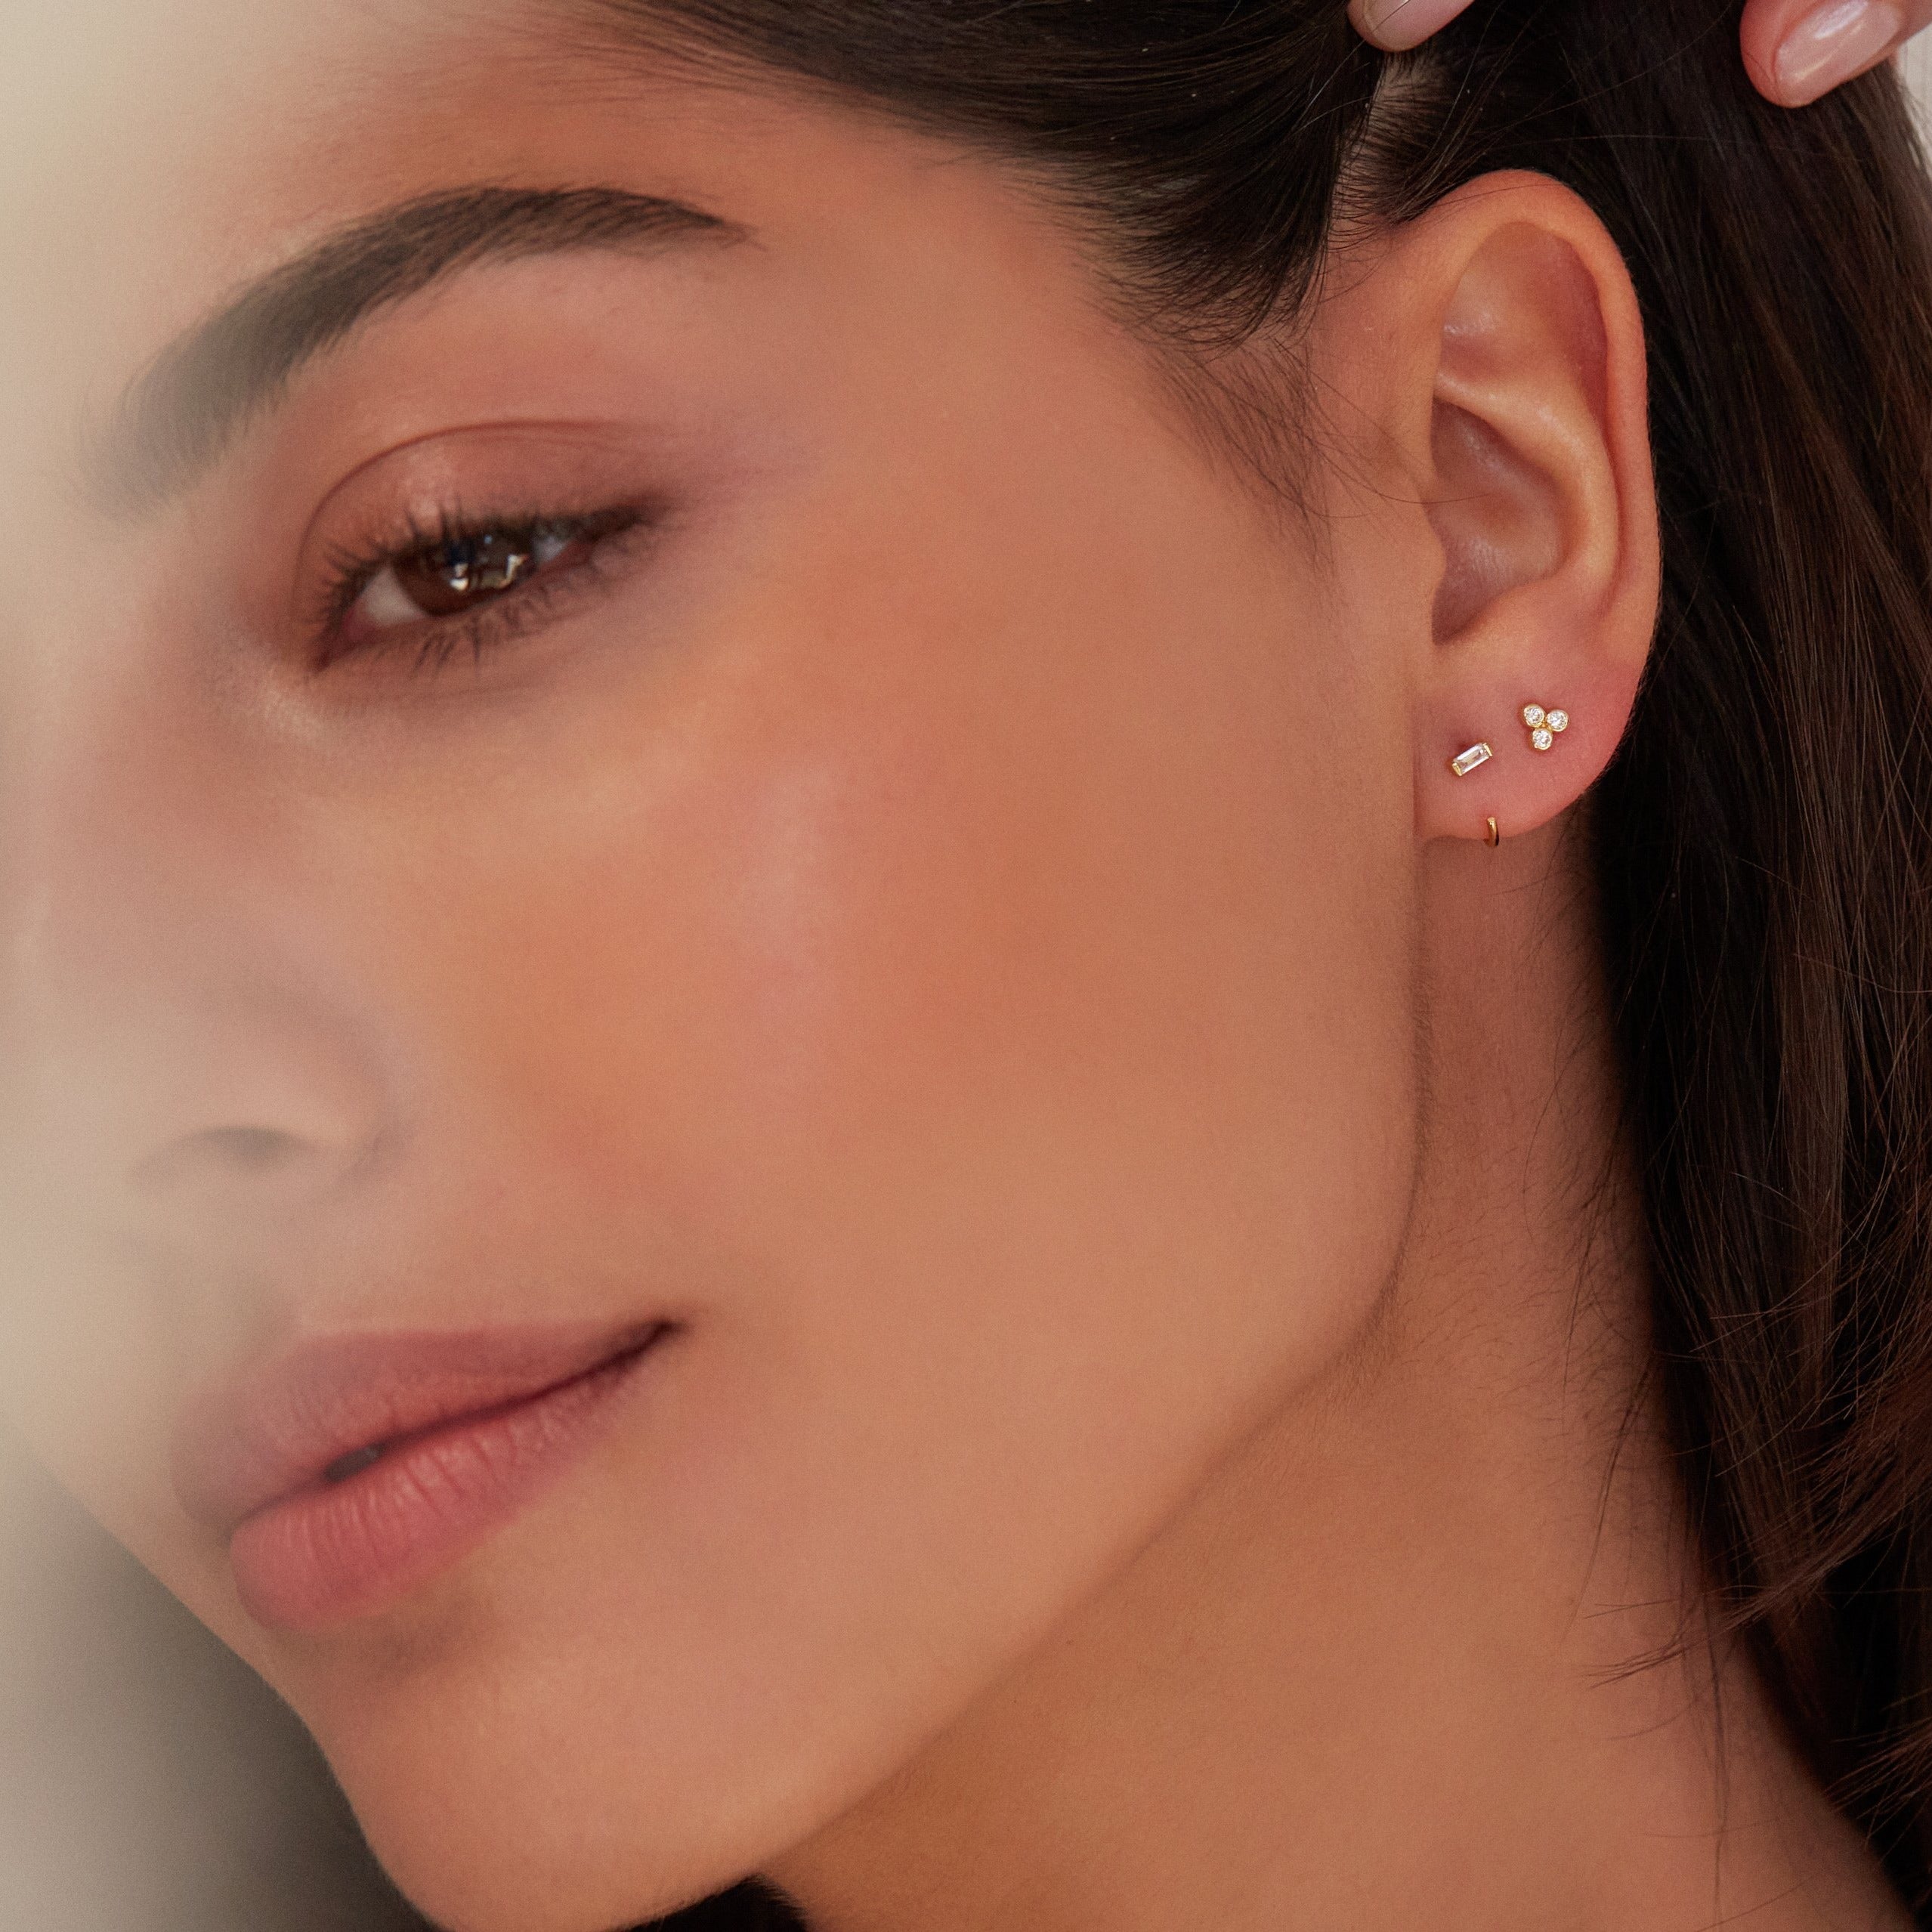 Gold diamond style baguette lobe hoop earring with gold diamond style pyramid stud earring in one ear lobe 